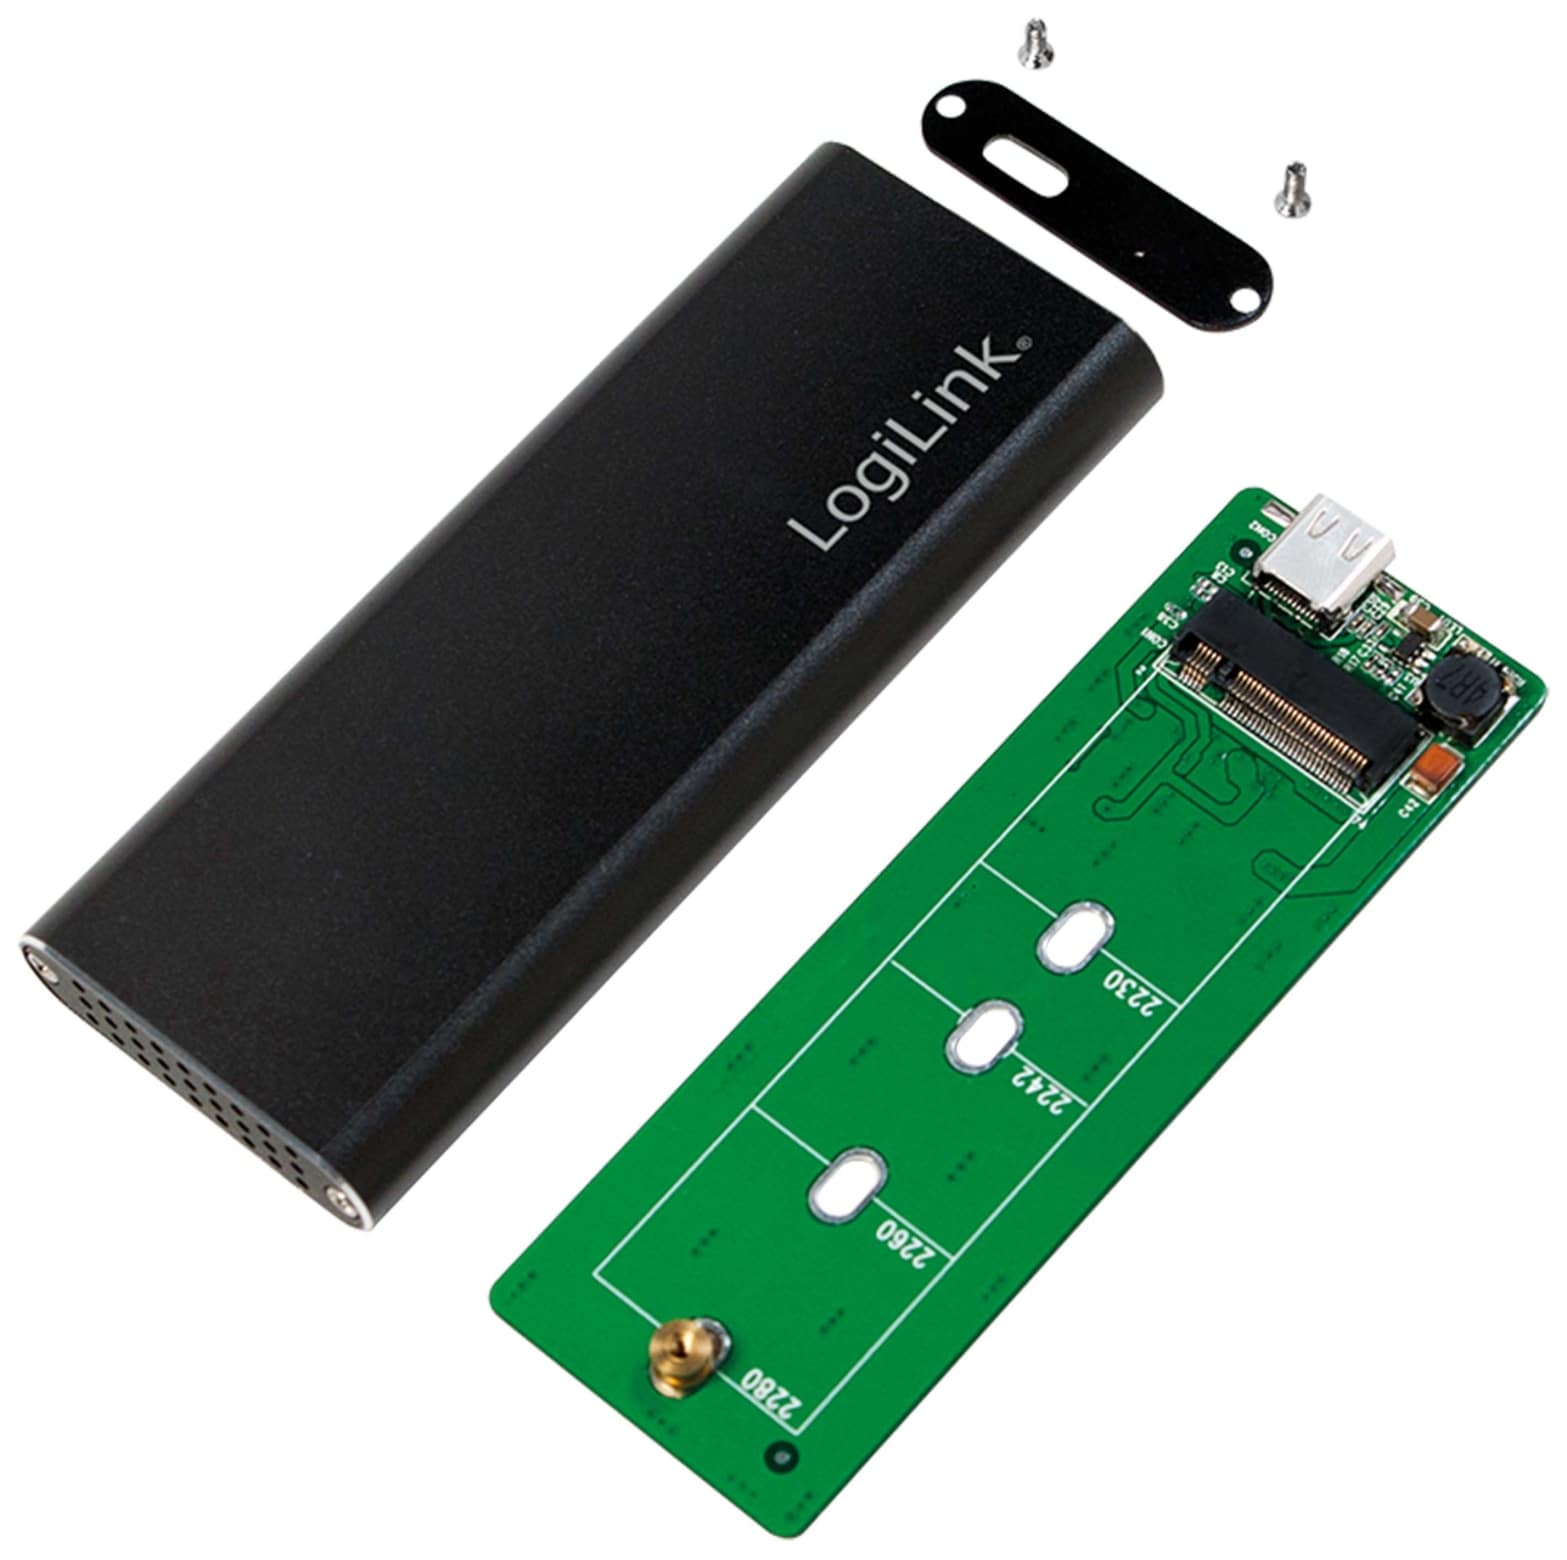 LOGILINK M.2-Festplattengehäuse UA0314, USB3.1 Typ-C